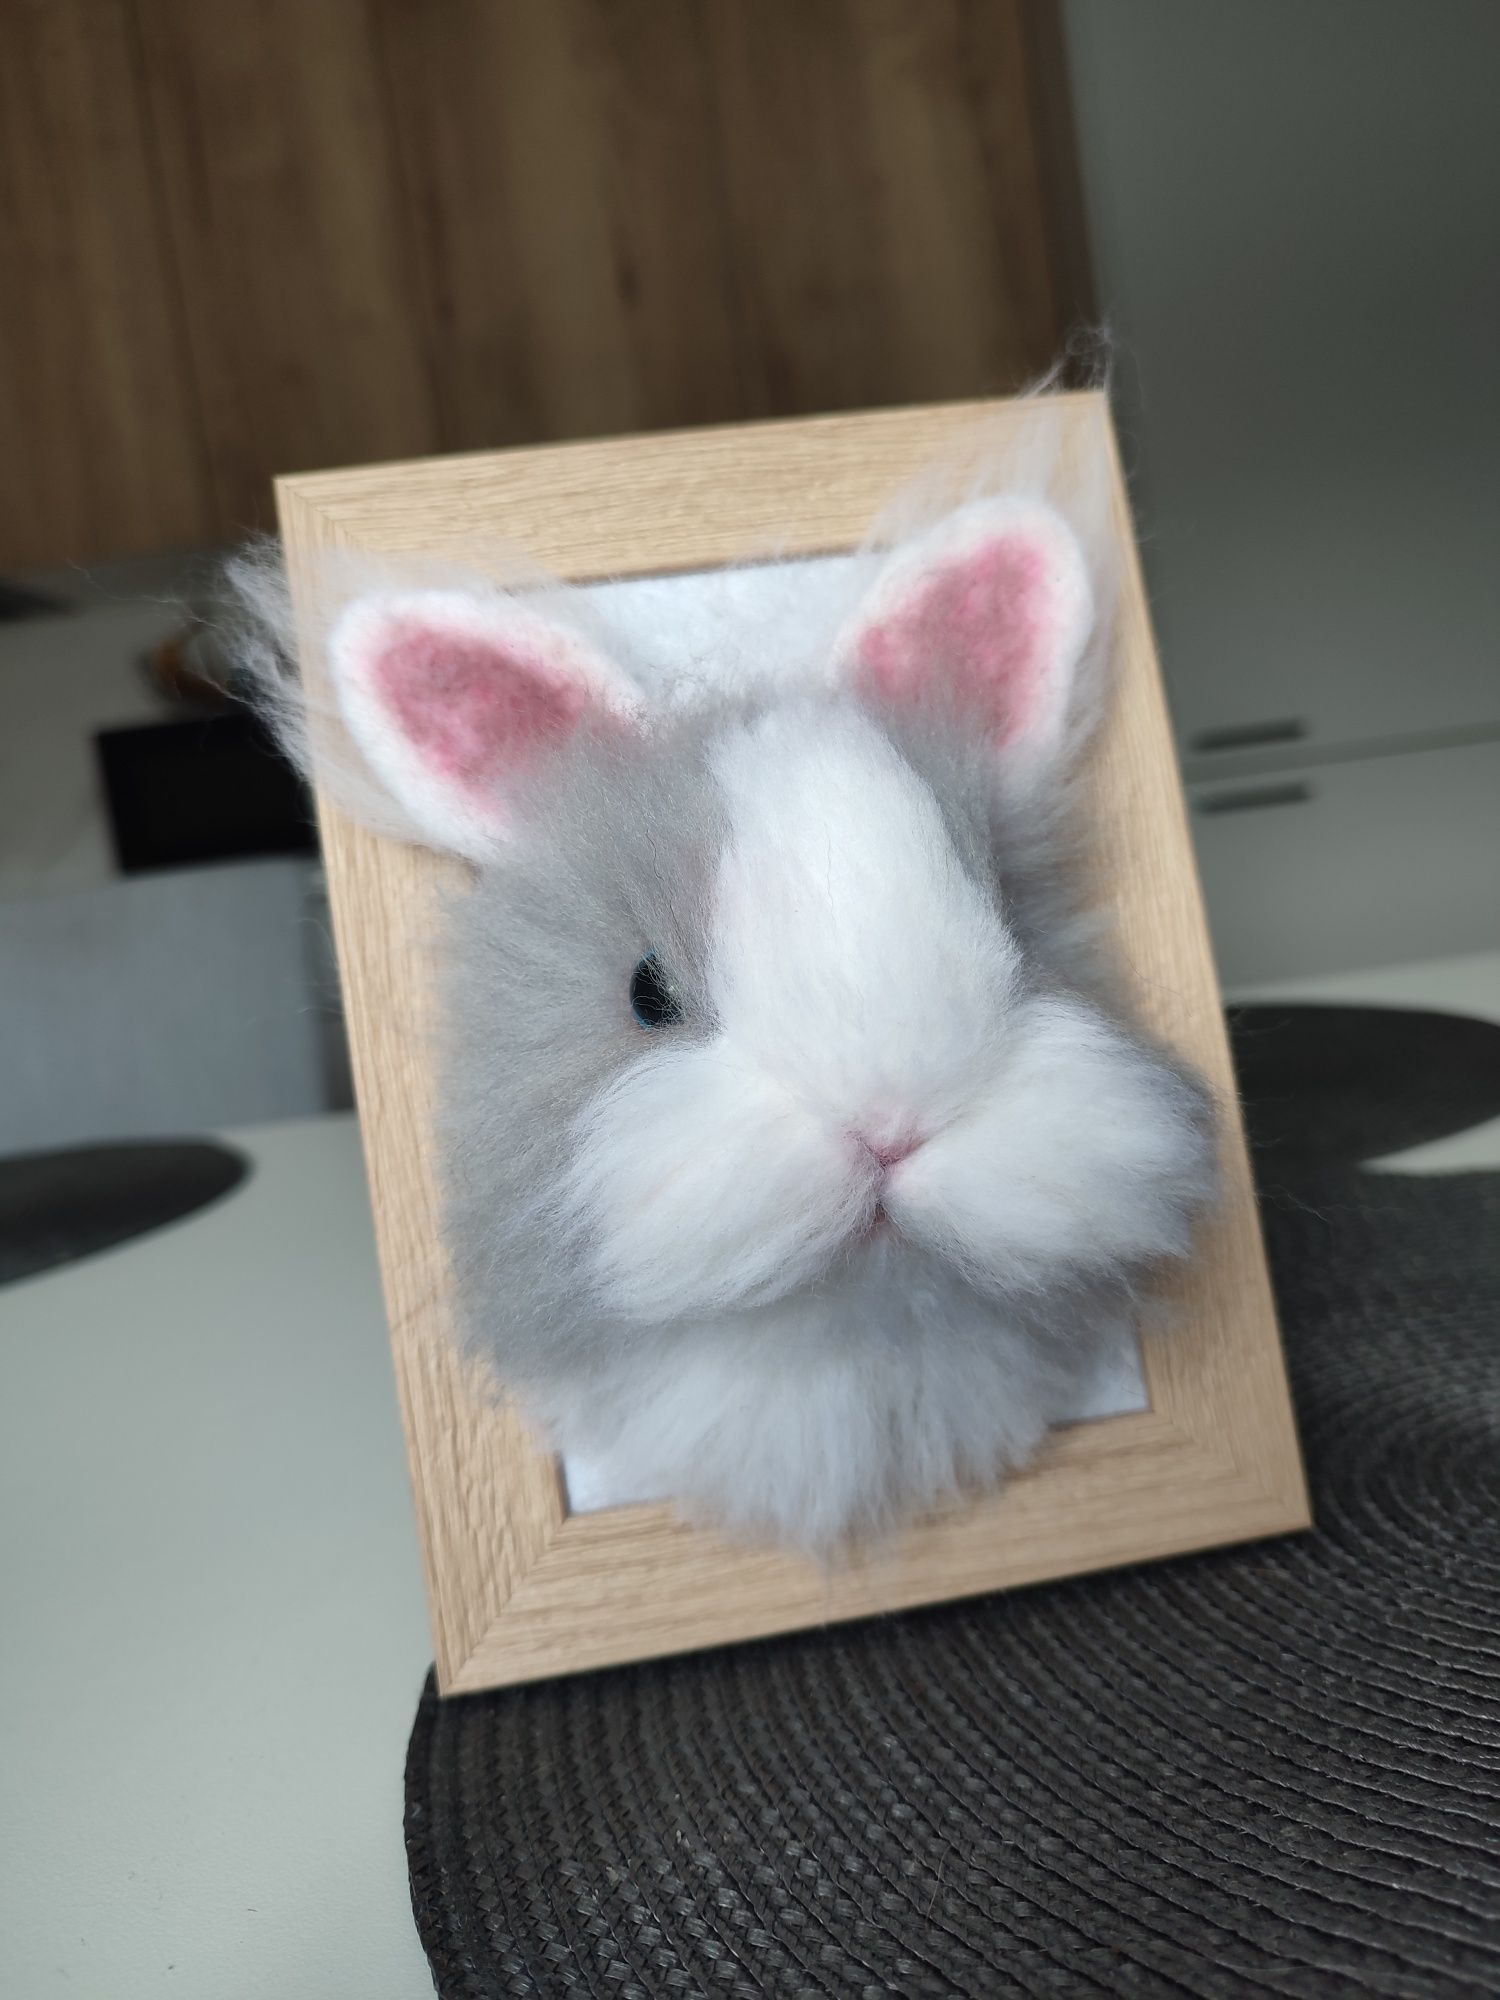 Głowa królika z filcu w ramce (3D)
Wym